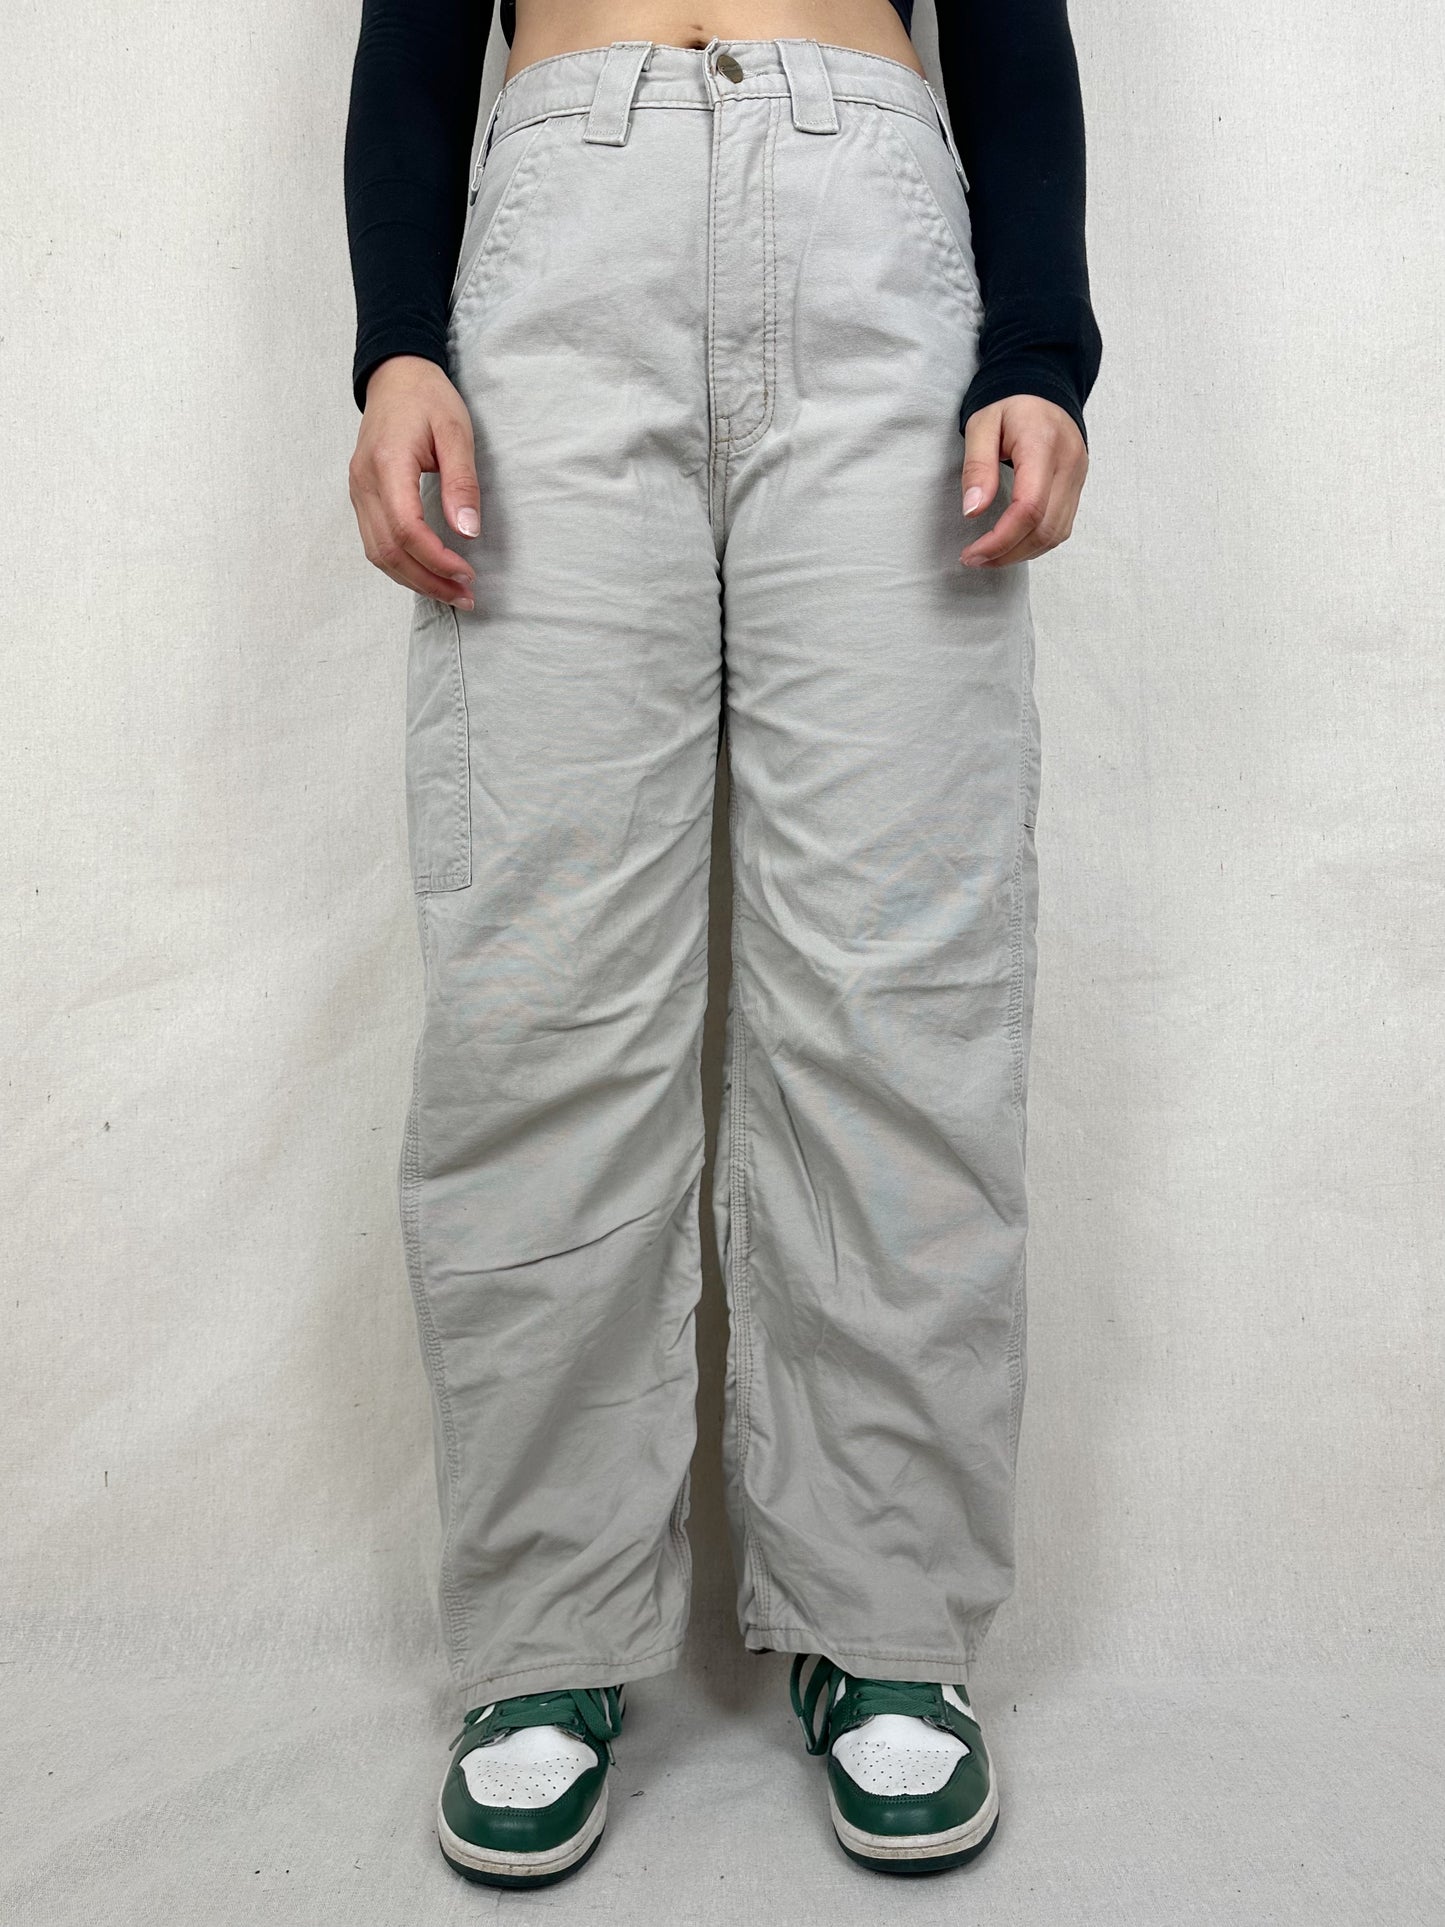 90's Carhartt Vintage Carpenter Pants Size 29x29